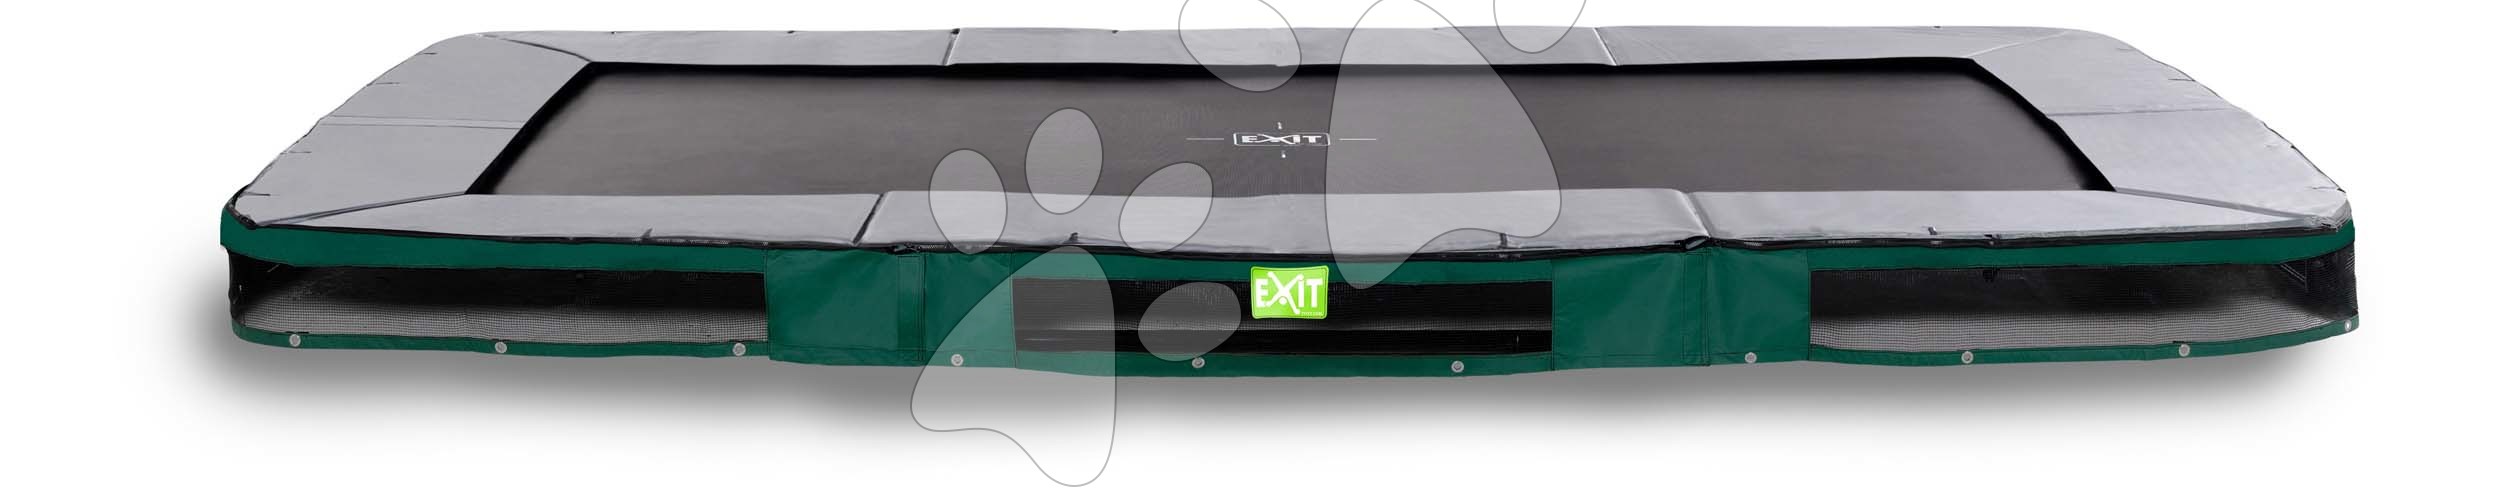 Trampolína Elegant Premium Ground Sports Green Exit Toys prízemná 214*366 cm zelená